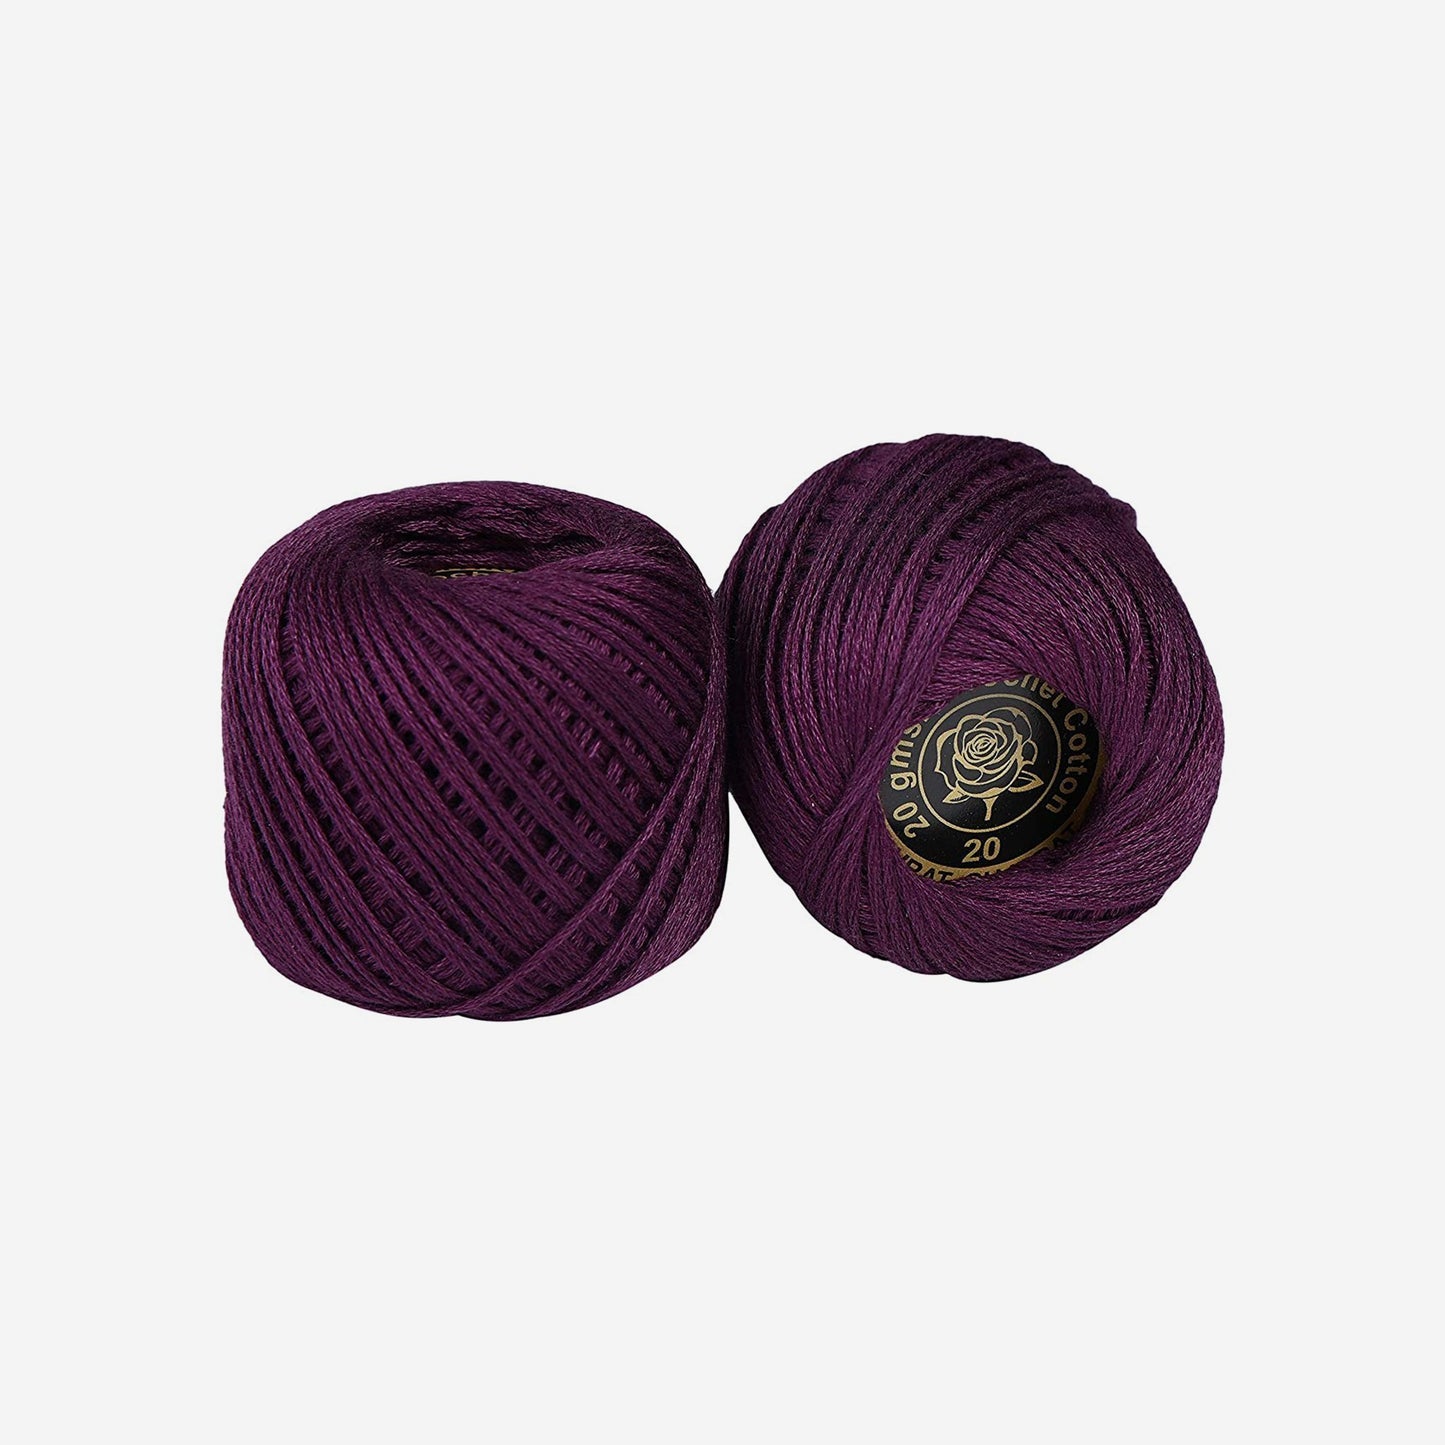 Hand-crochet hoops (Variation 19)